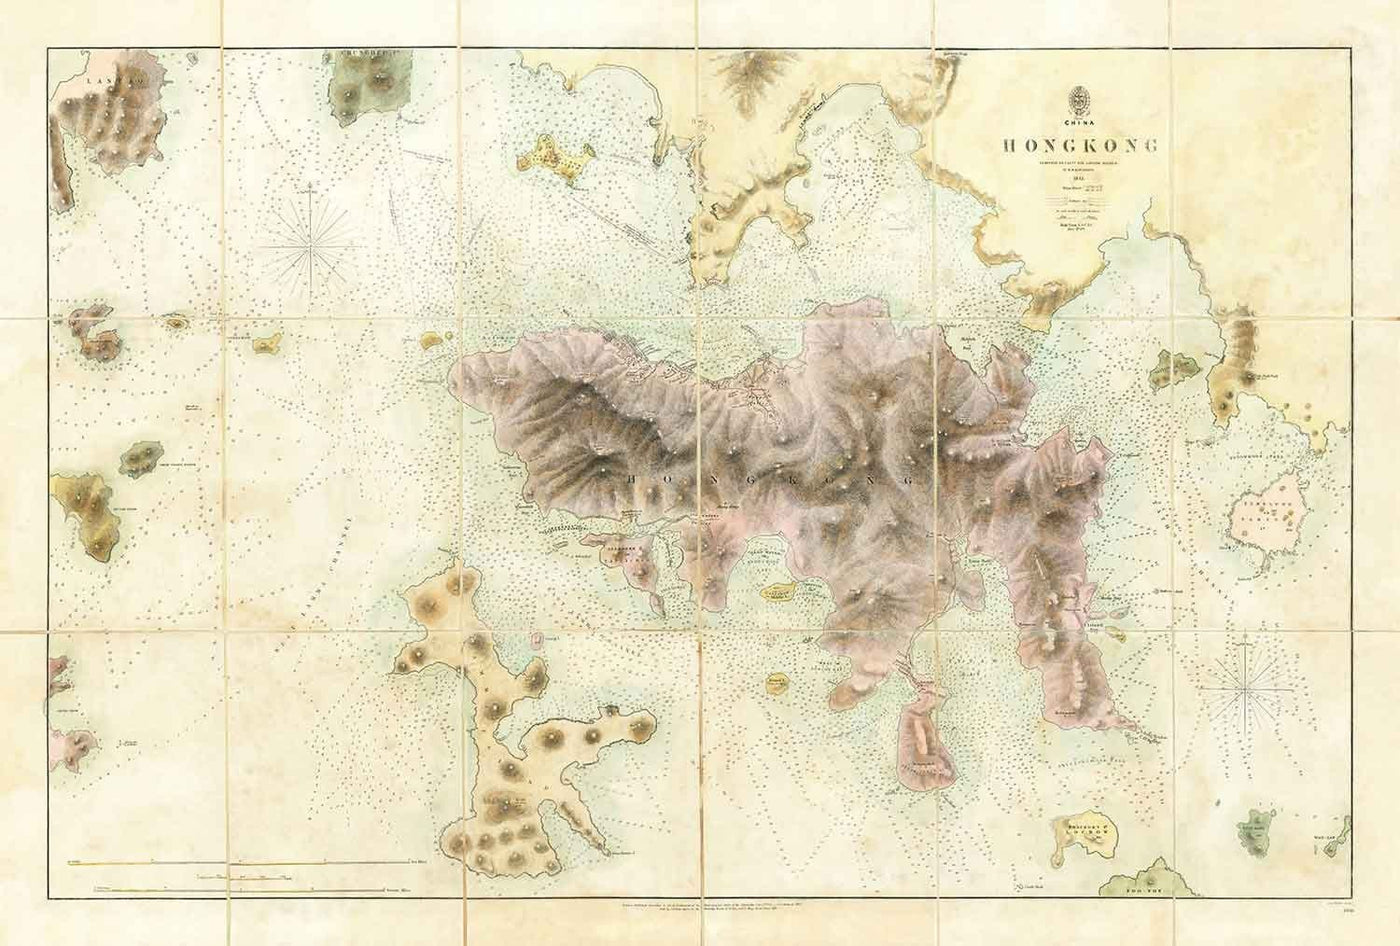 Die erste Karte von Hongkong, 1843 - Old Admiralty Navy Chart - Kowloon, Victoria Bay, frühe britische Kolonie